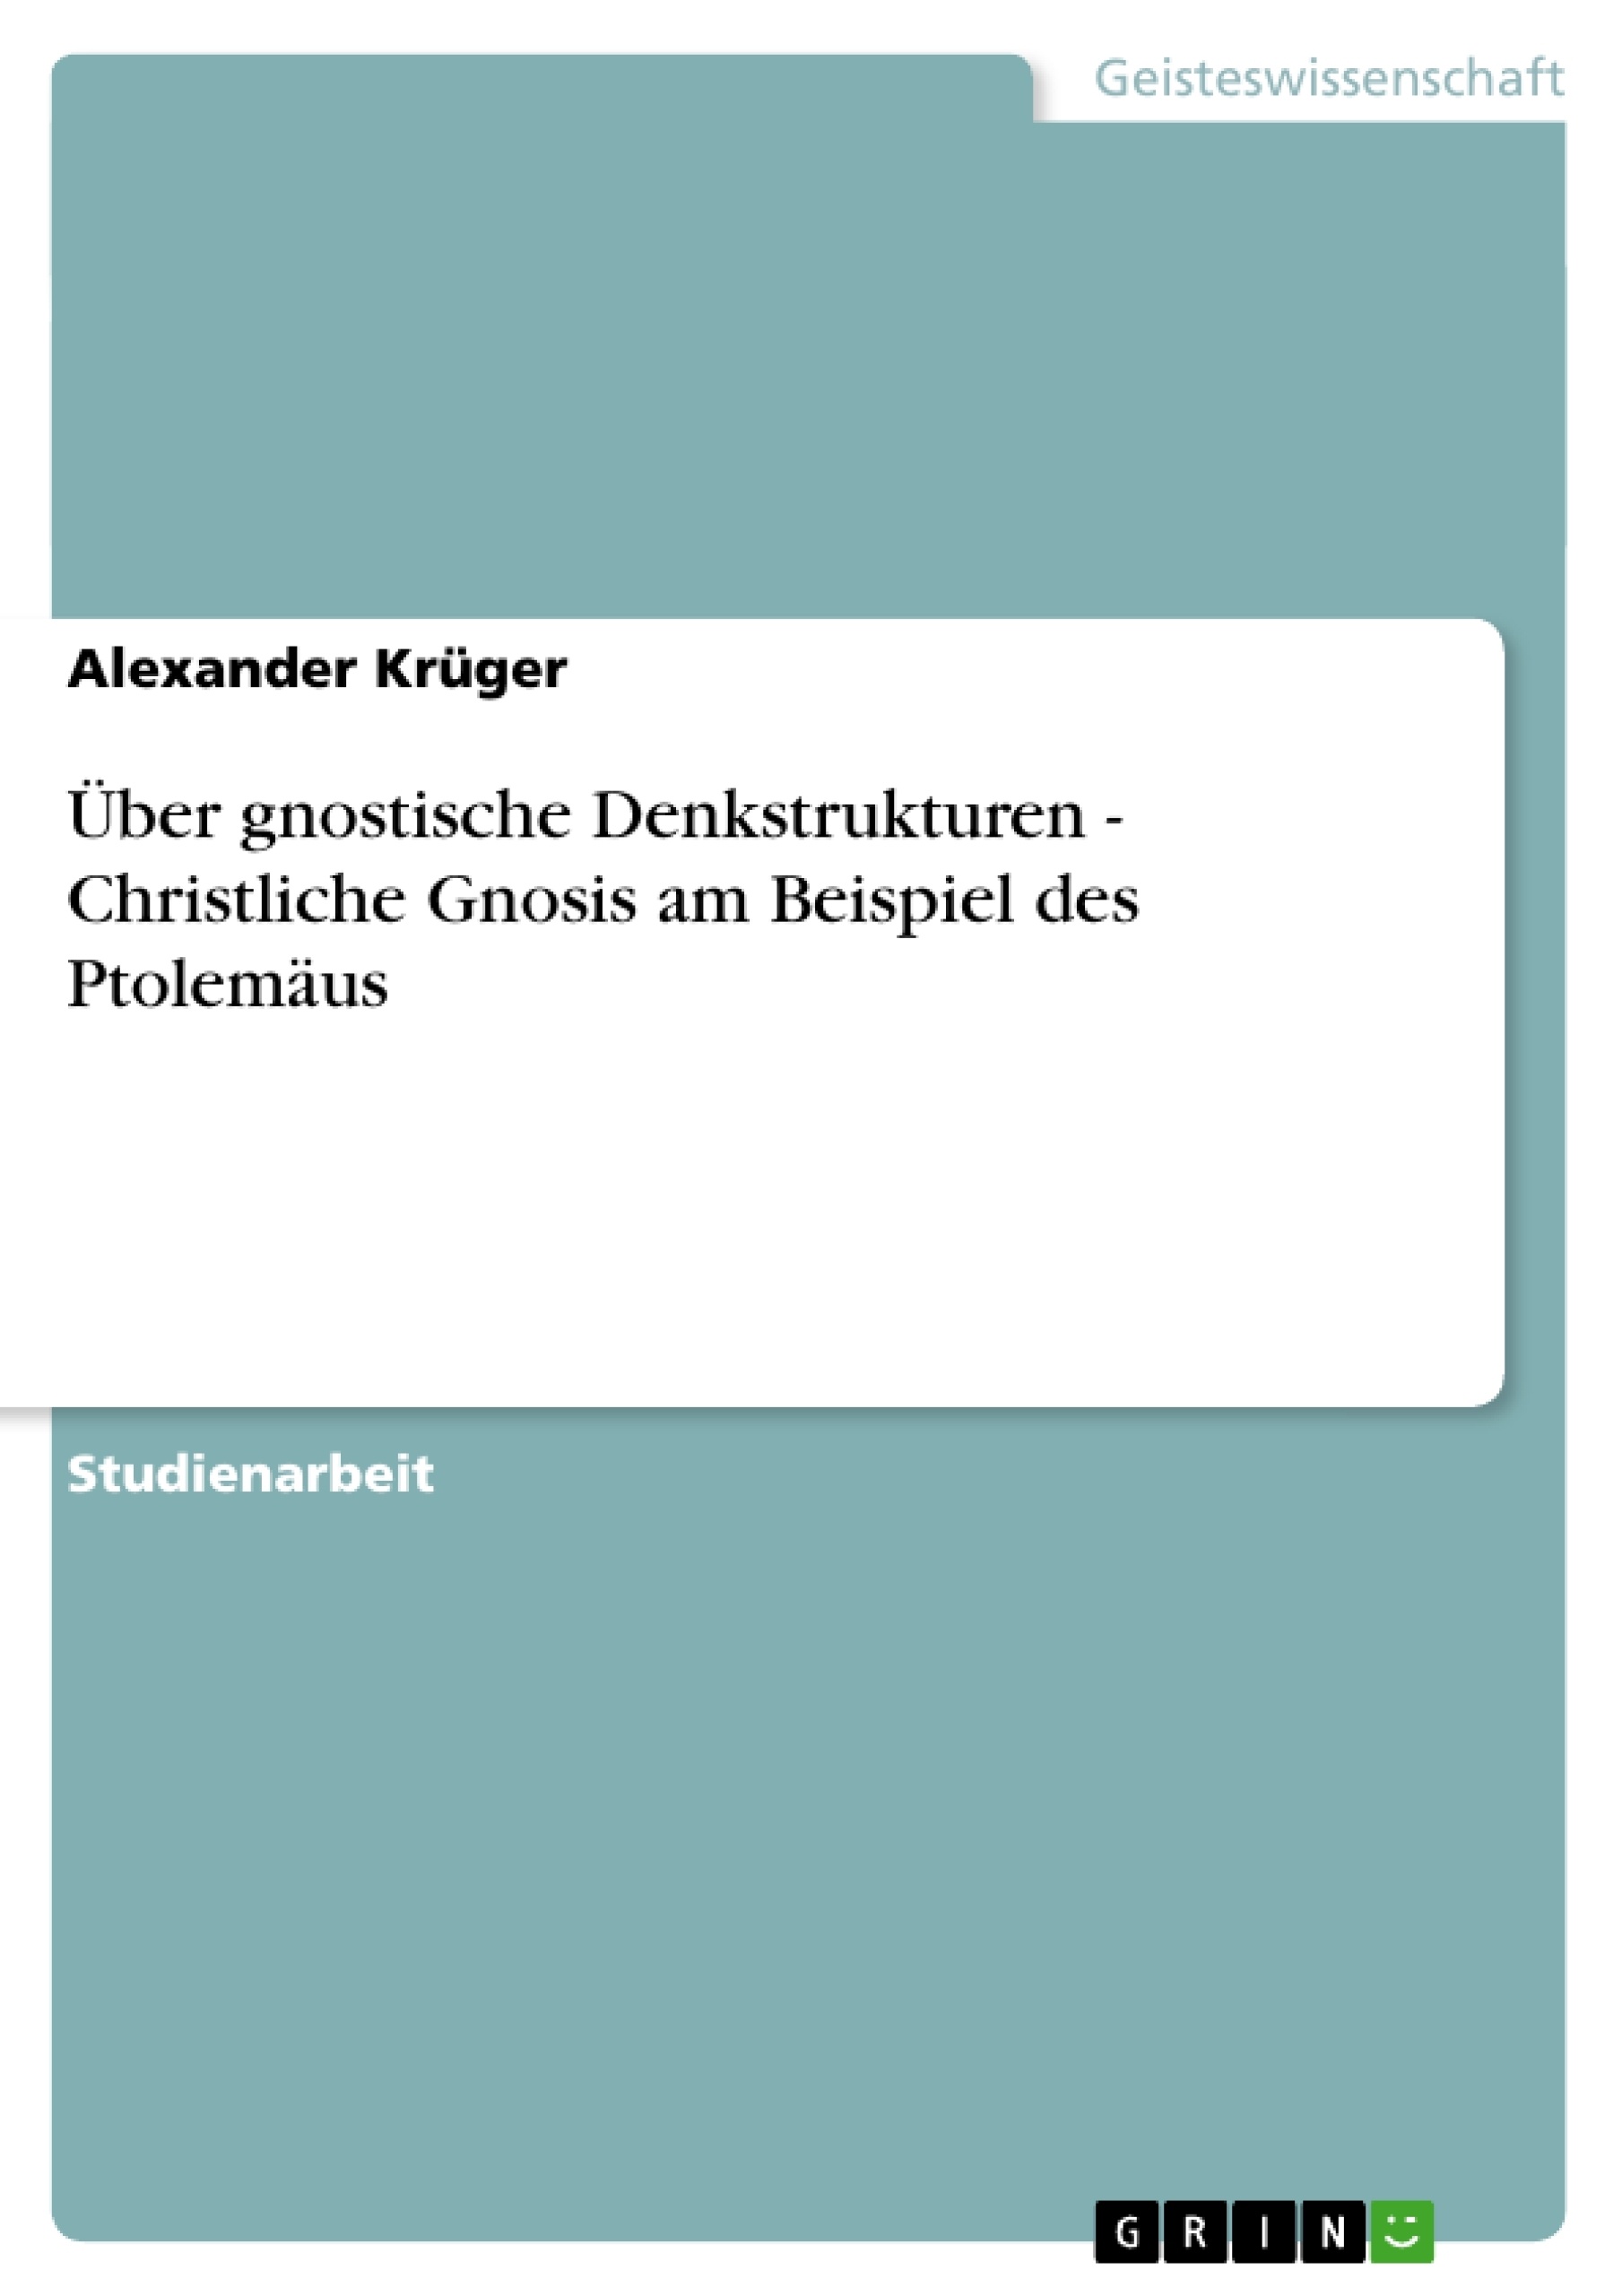 Title: Über gnostische Denkstrukturen - Christliche Gnosis am Beispiel des Ptolemäus